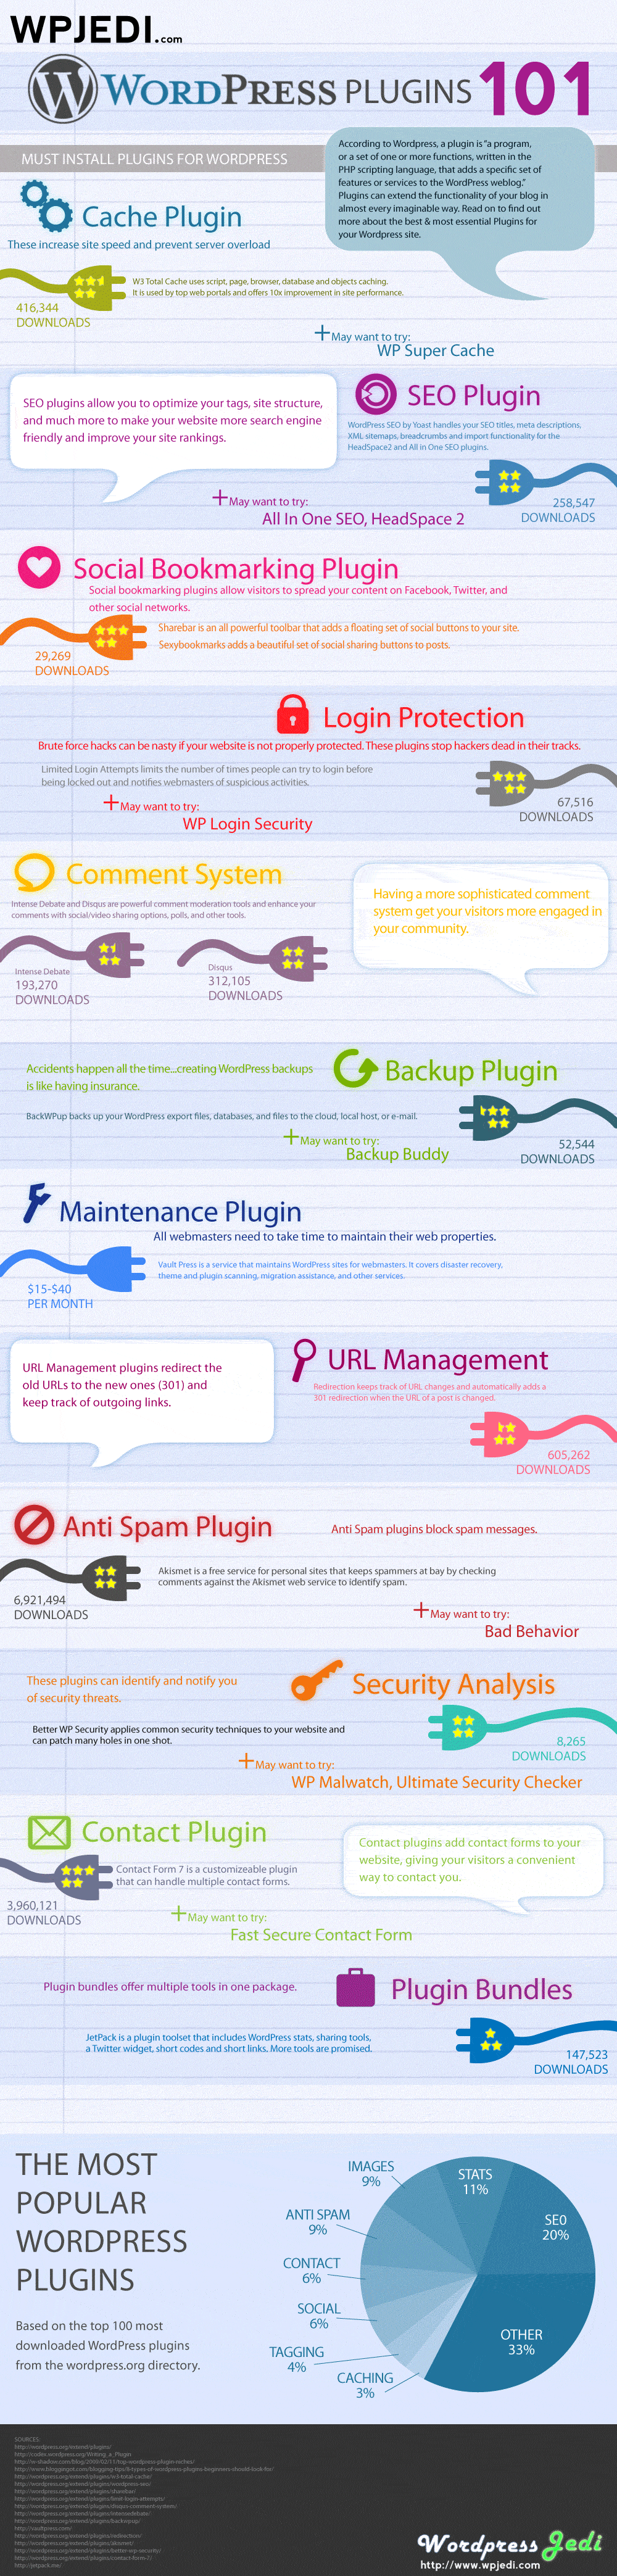 Infografía: Plugins que debes considerar en tu WordPress